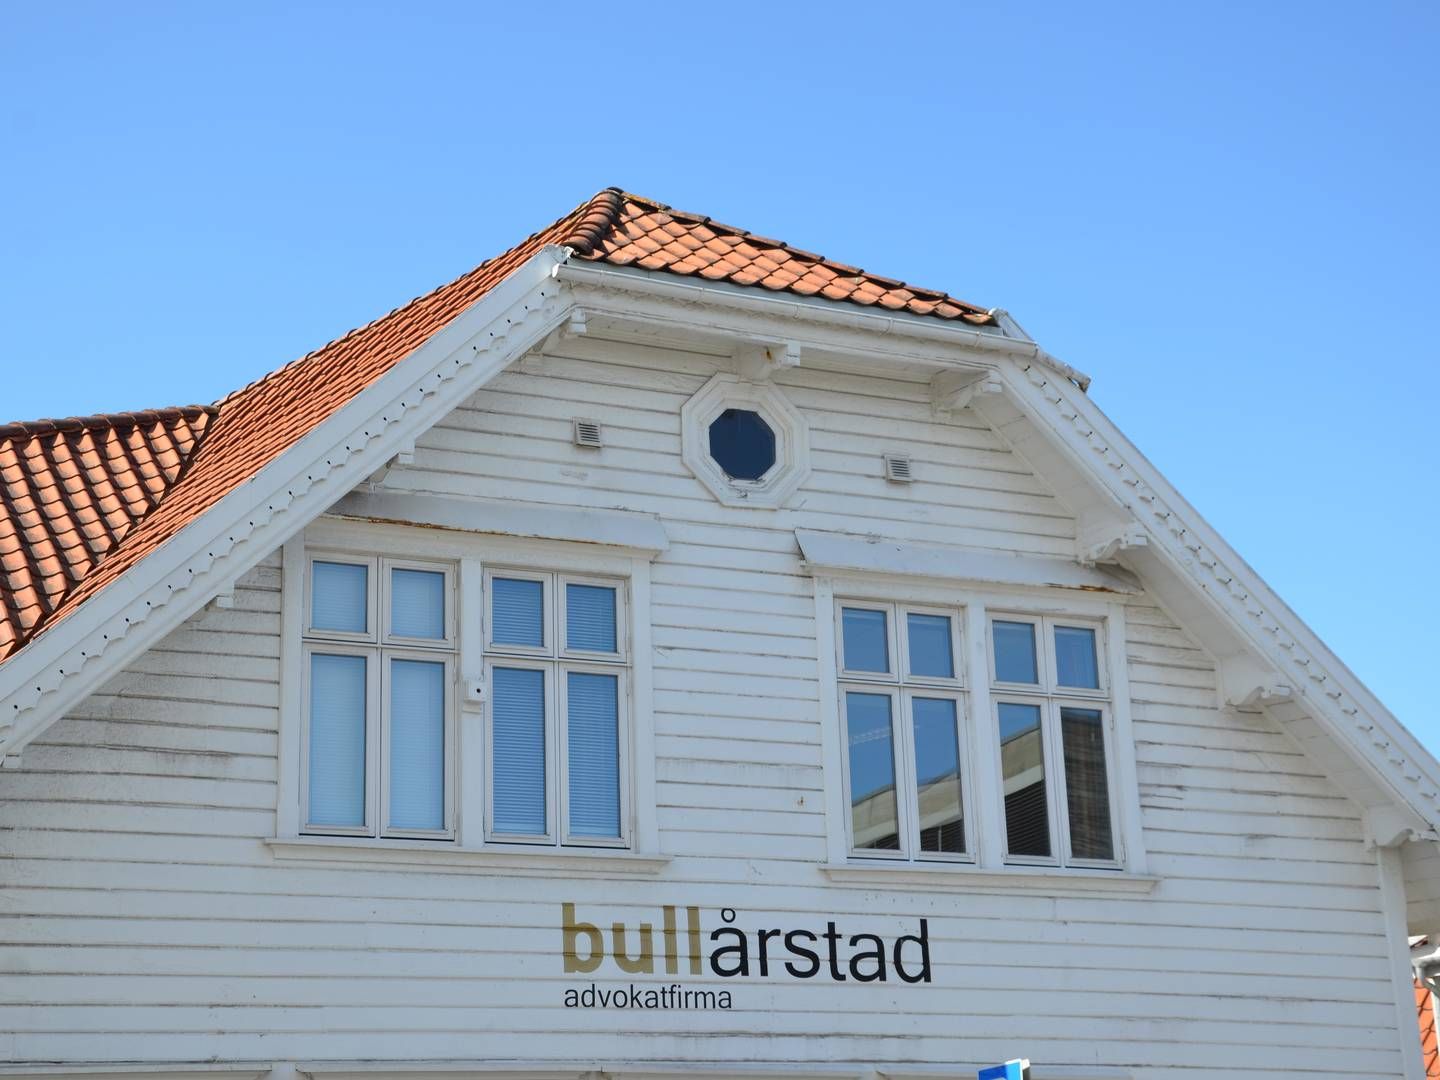 BRYTER SAMARBEID: Boligbyggelag dropper videre samarbeid med Bull Årstad. | Foto: Aleksander Simonsen Losnegård / AdvokatWatch